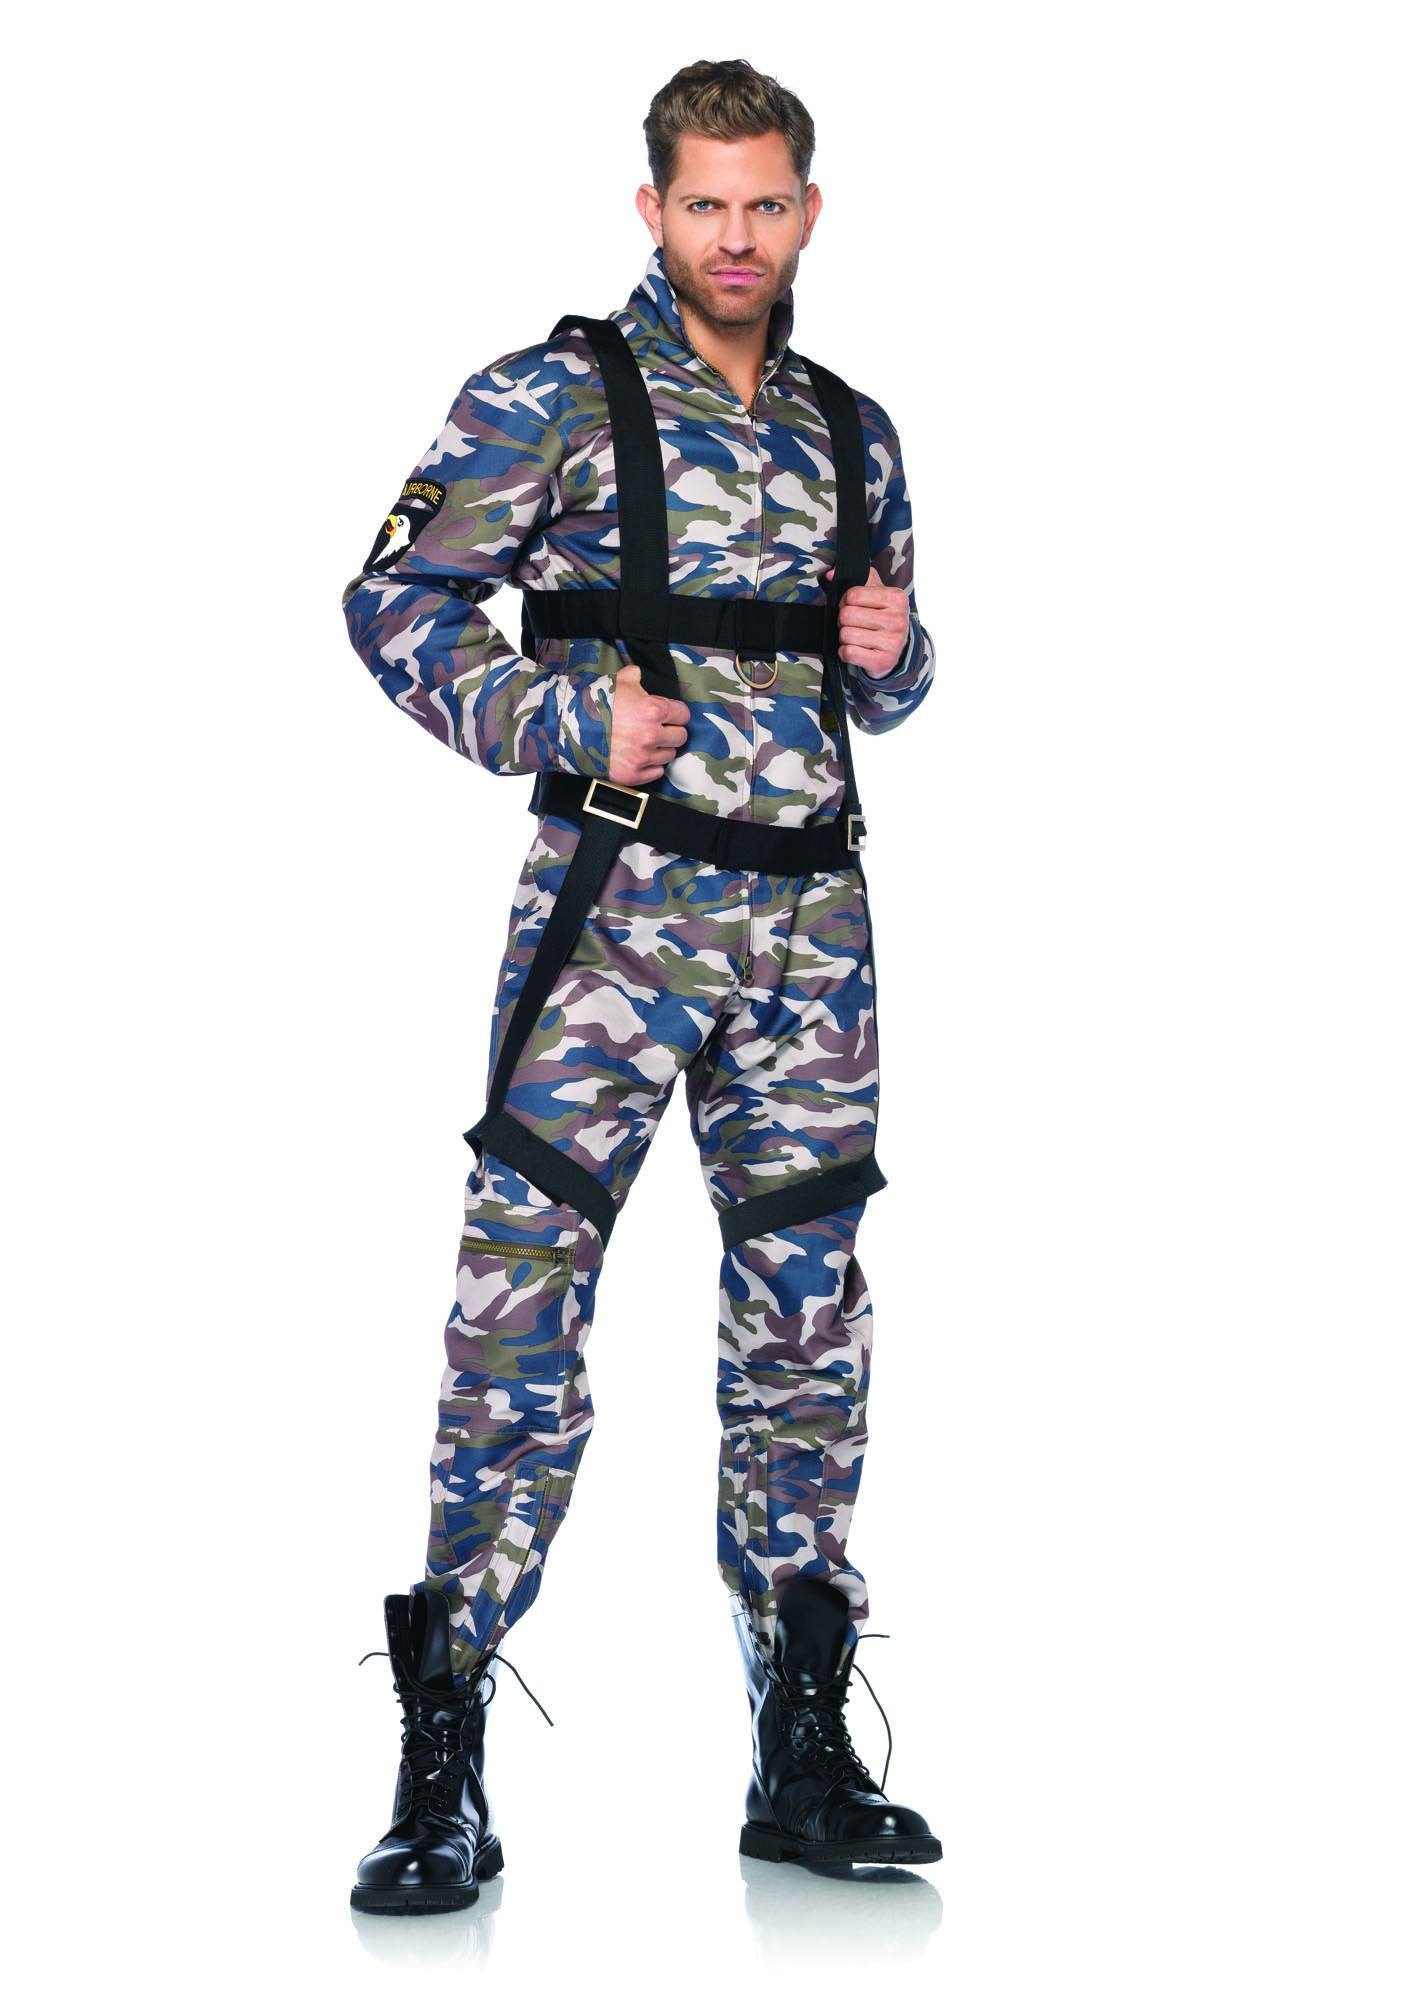 Costume - Paratrooper Men's Costume